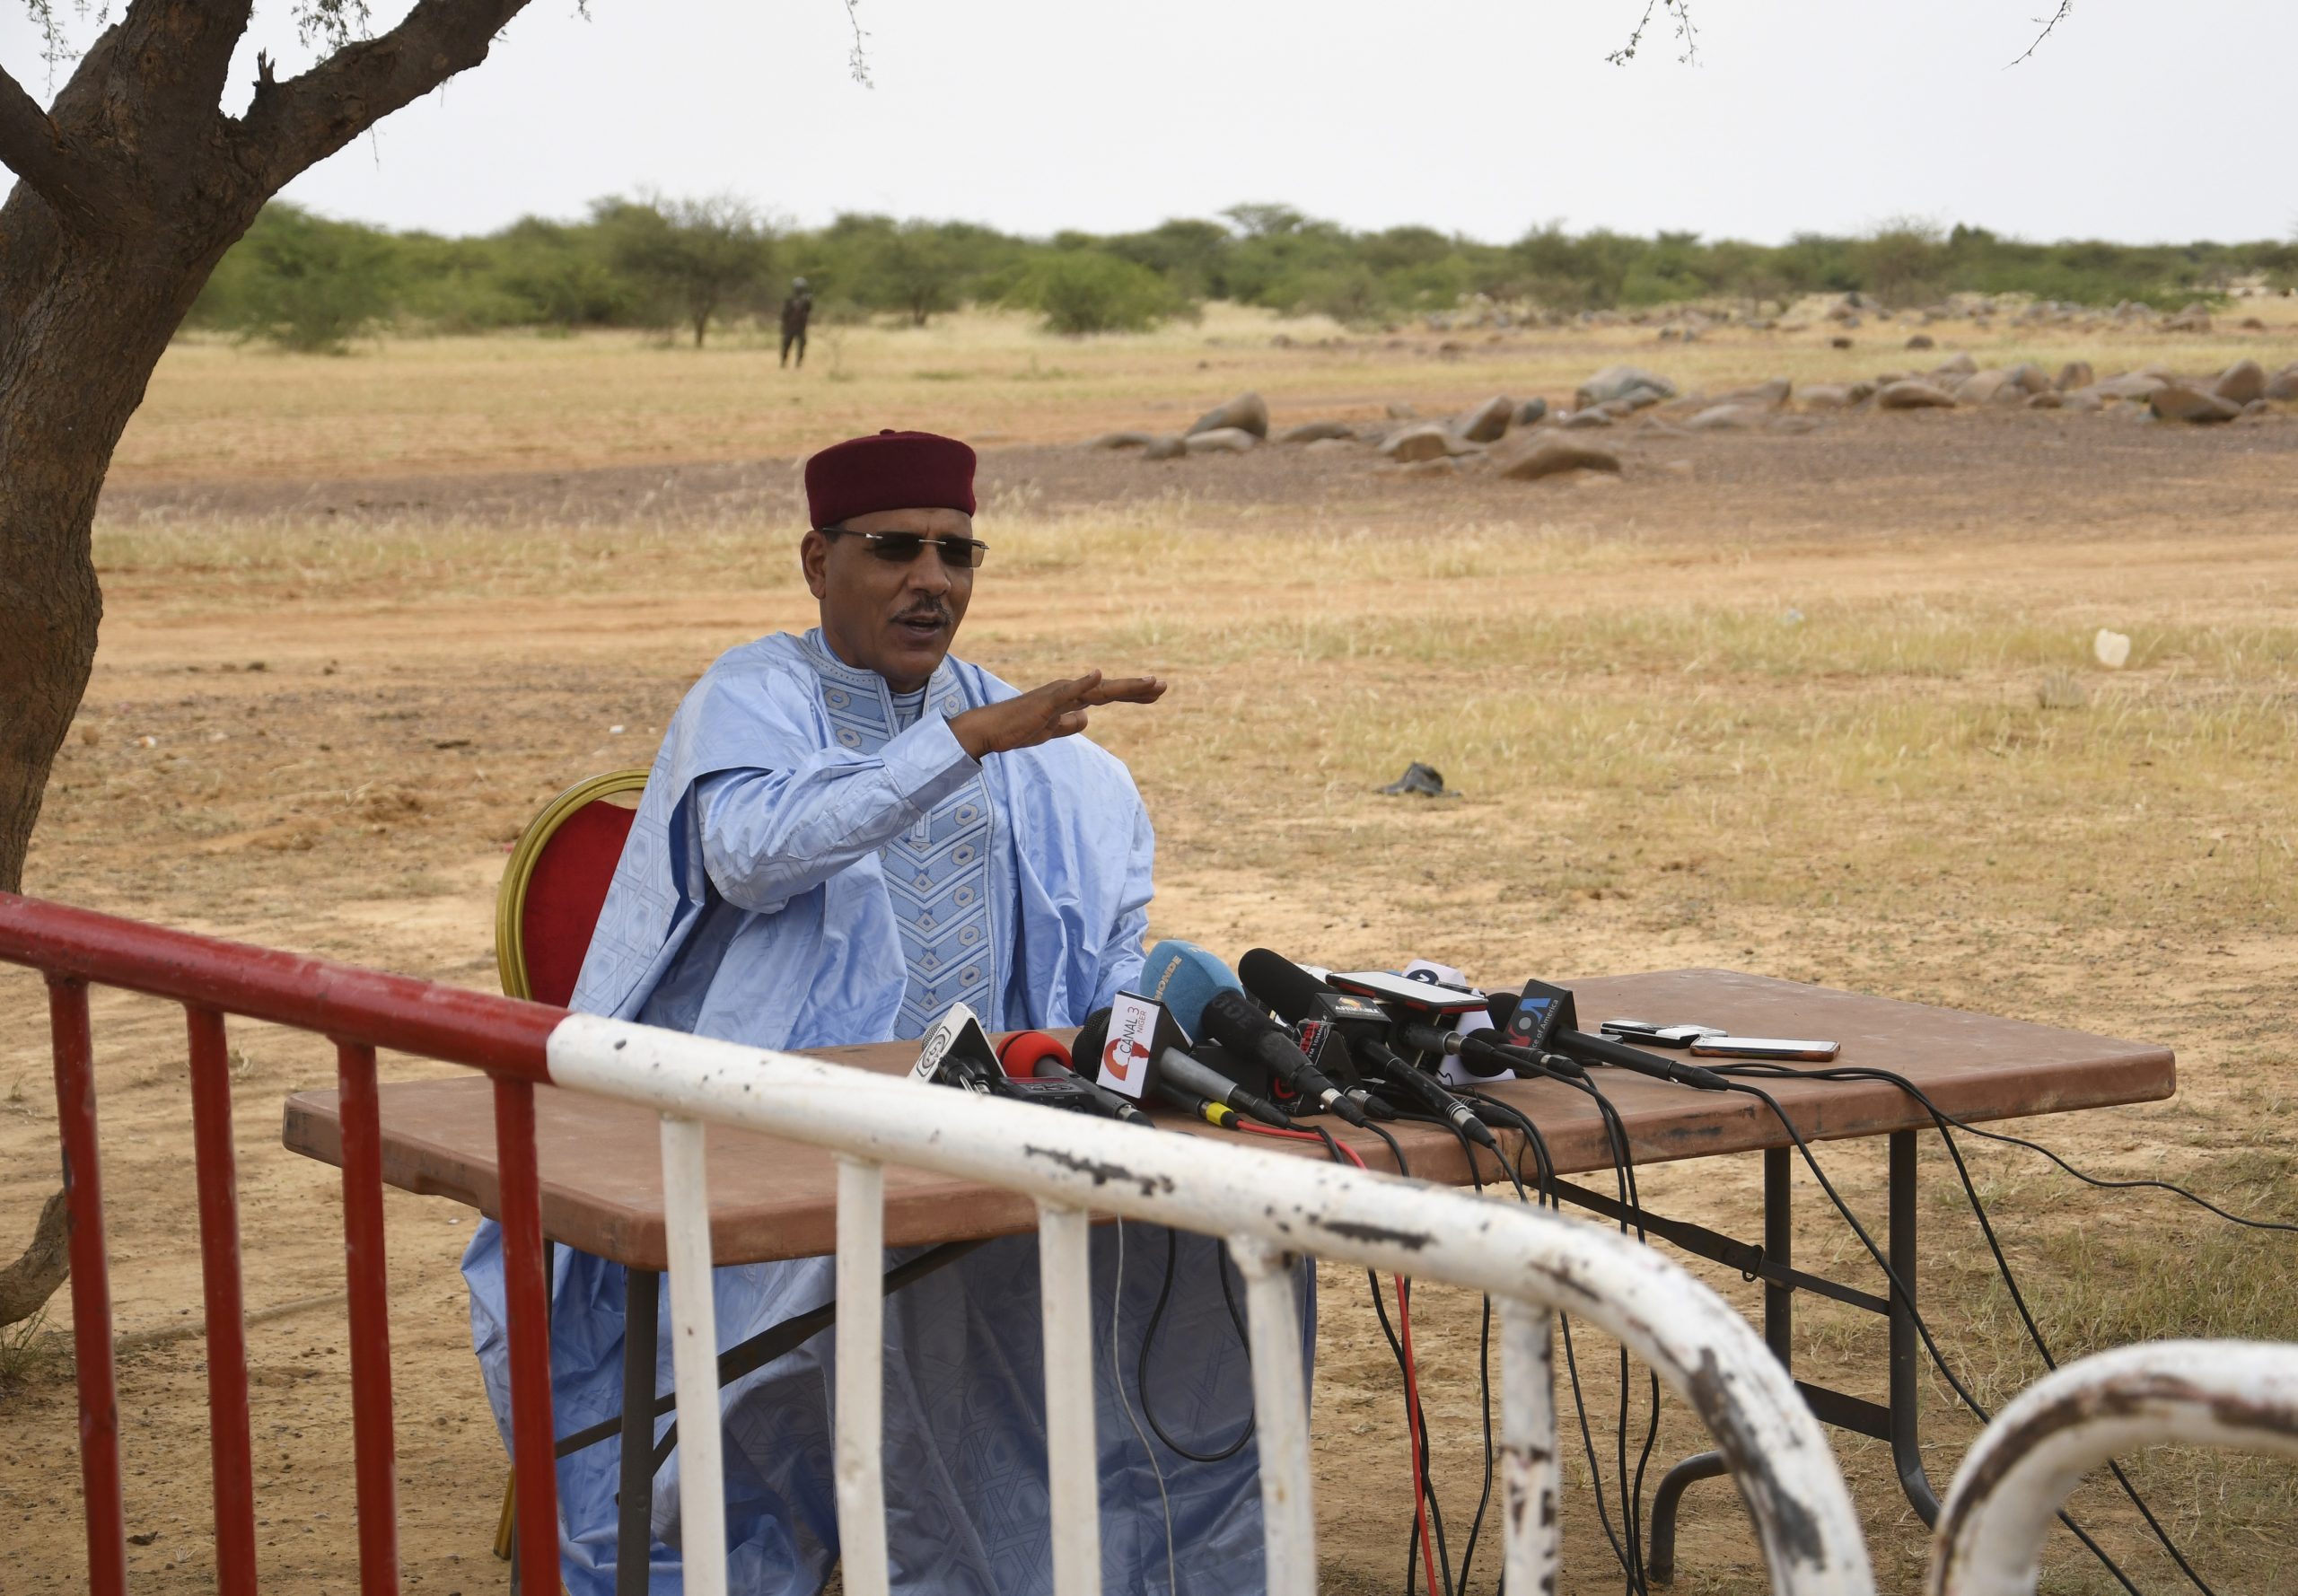 Niger's President Mohamed Bazoum